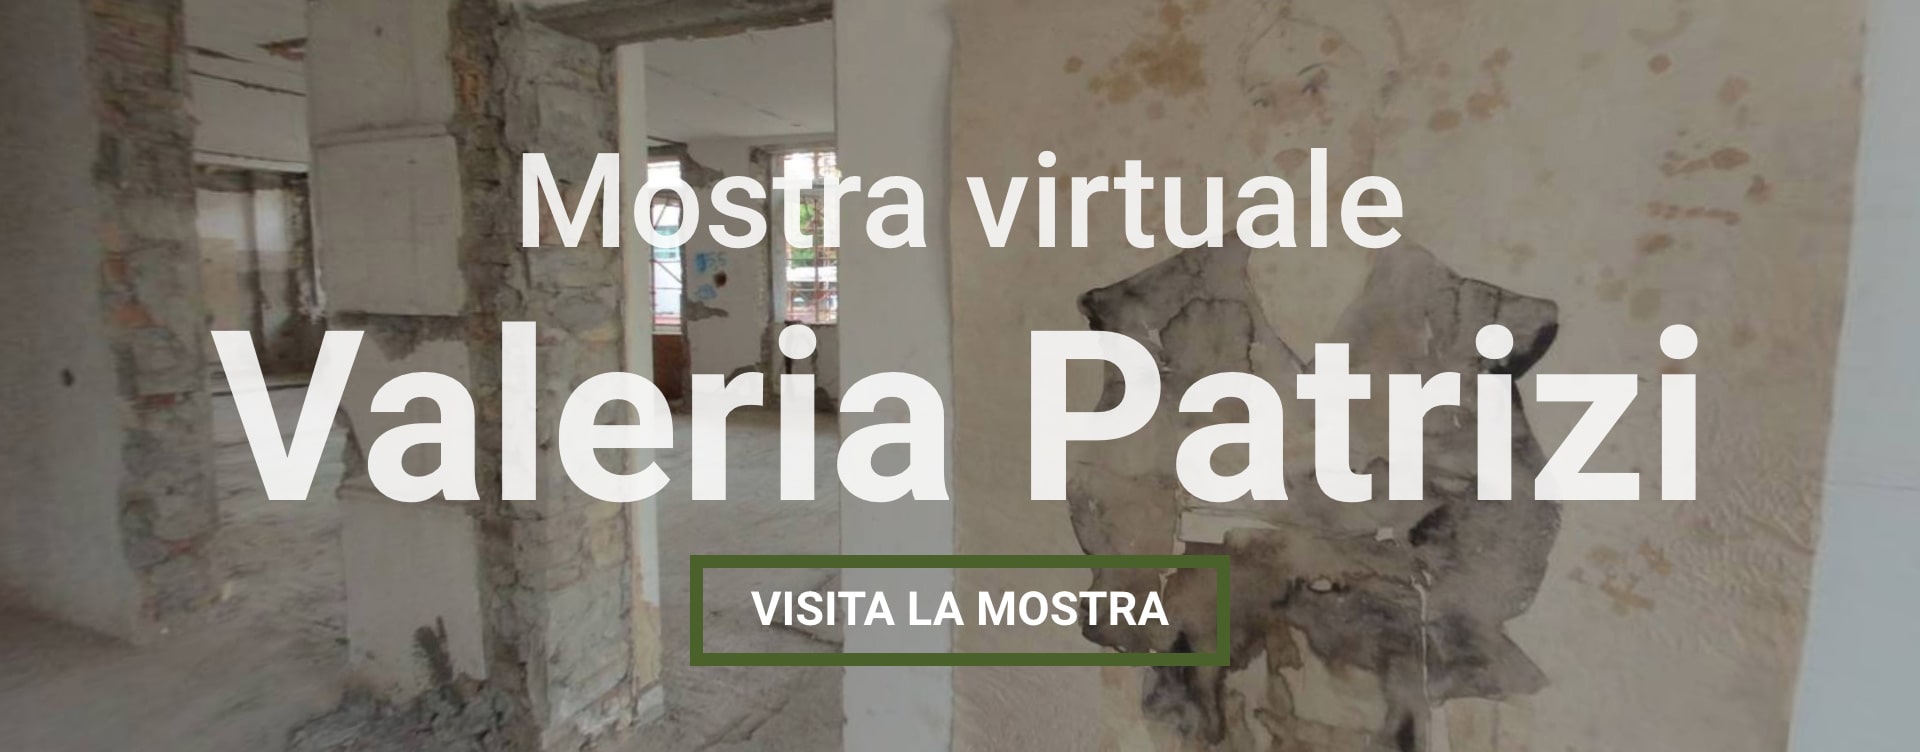 Mostra Virtuale di Valeria Patrizi